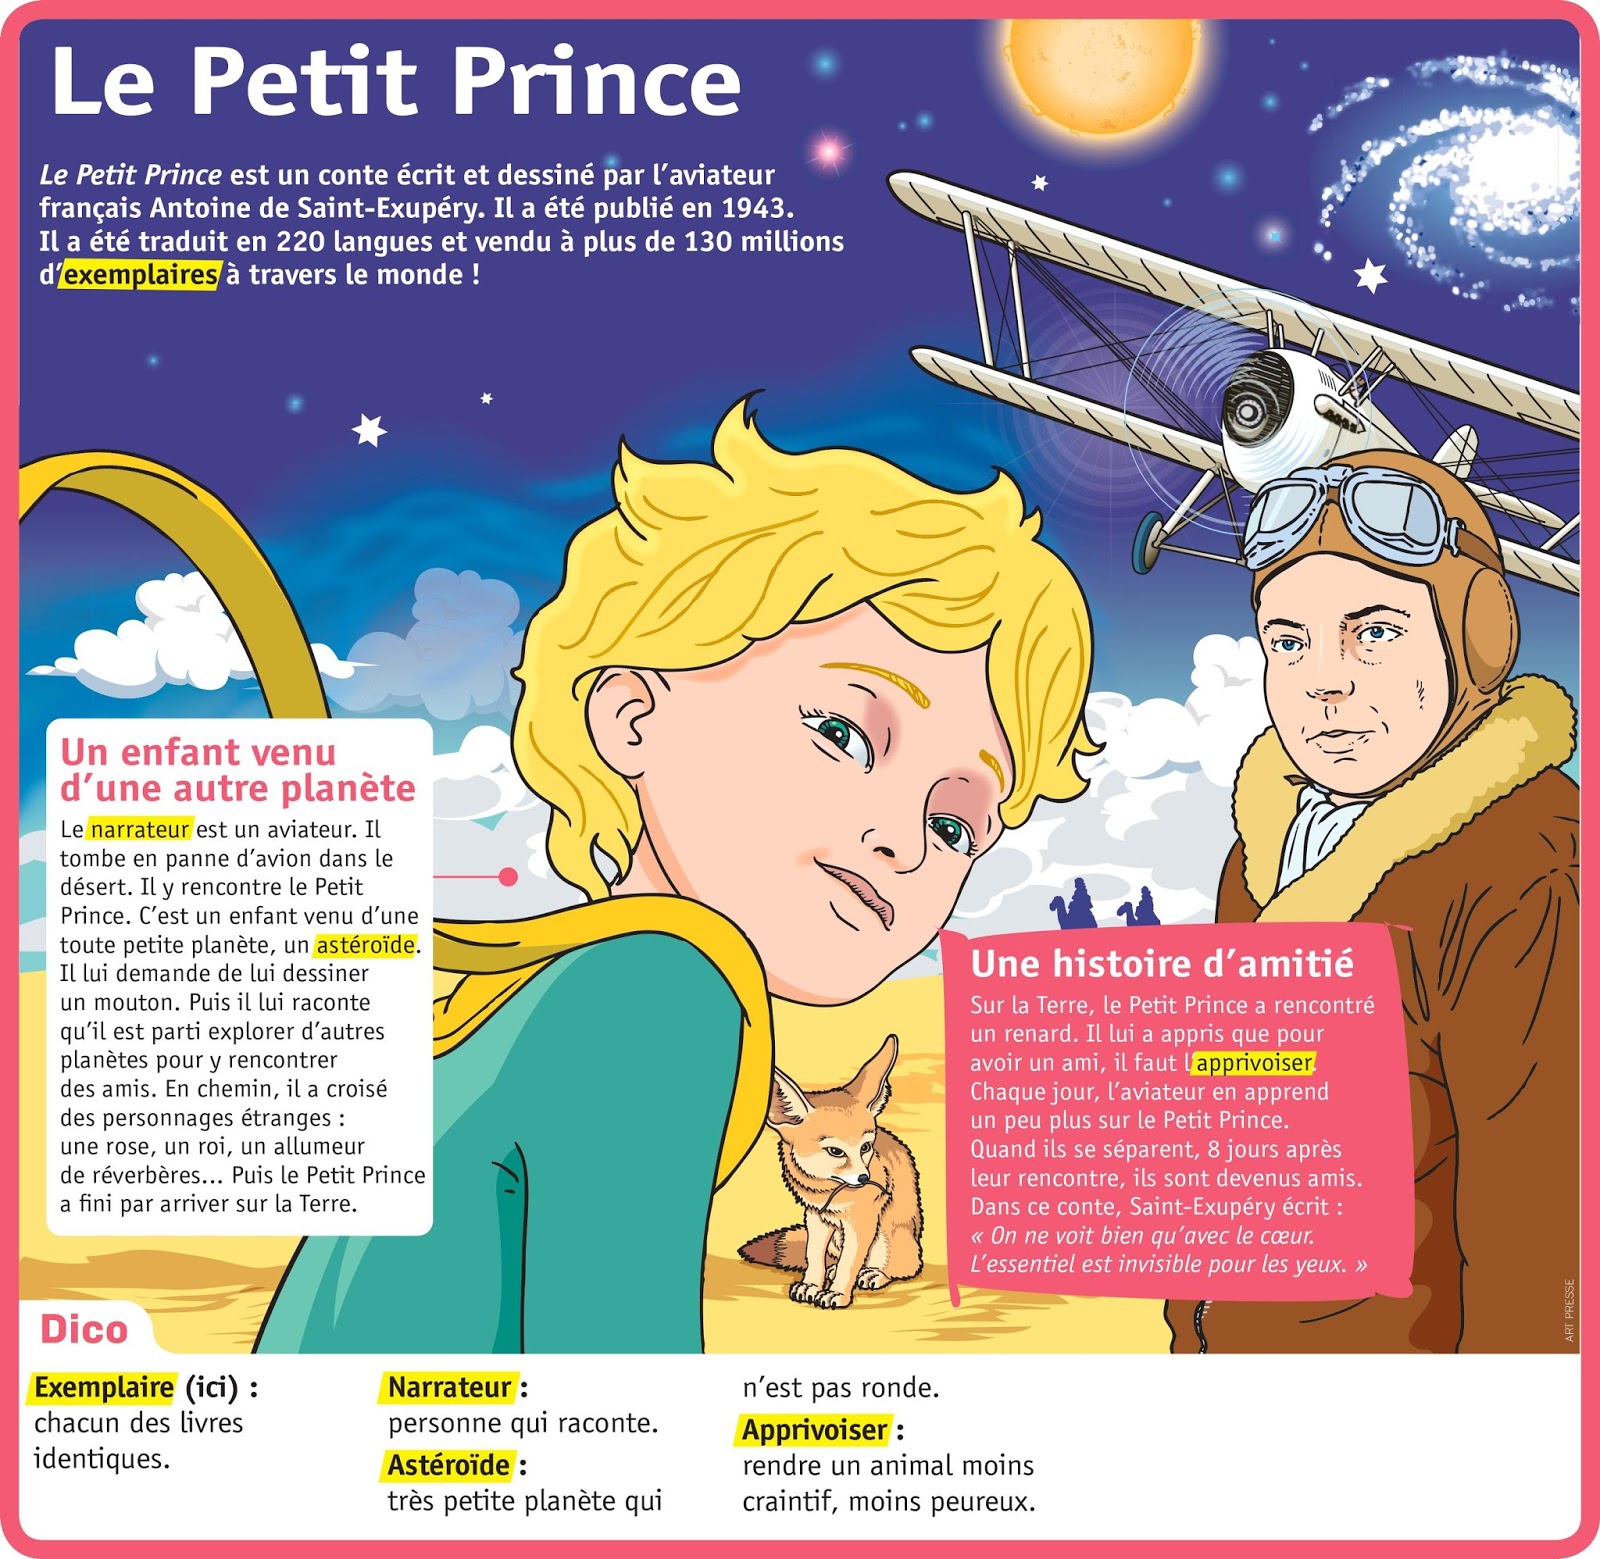 Le Petit Prince»: le numérique, «invisible pour les yeux»?